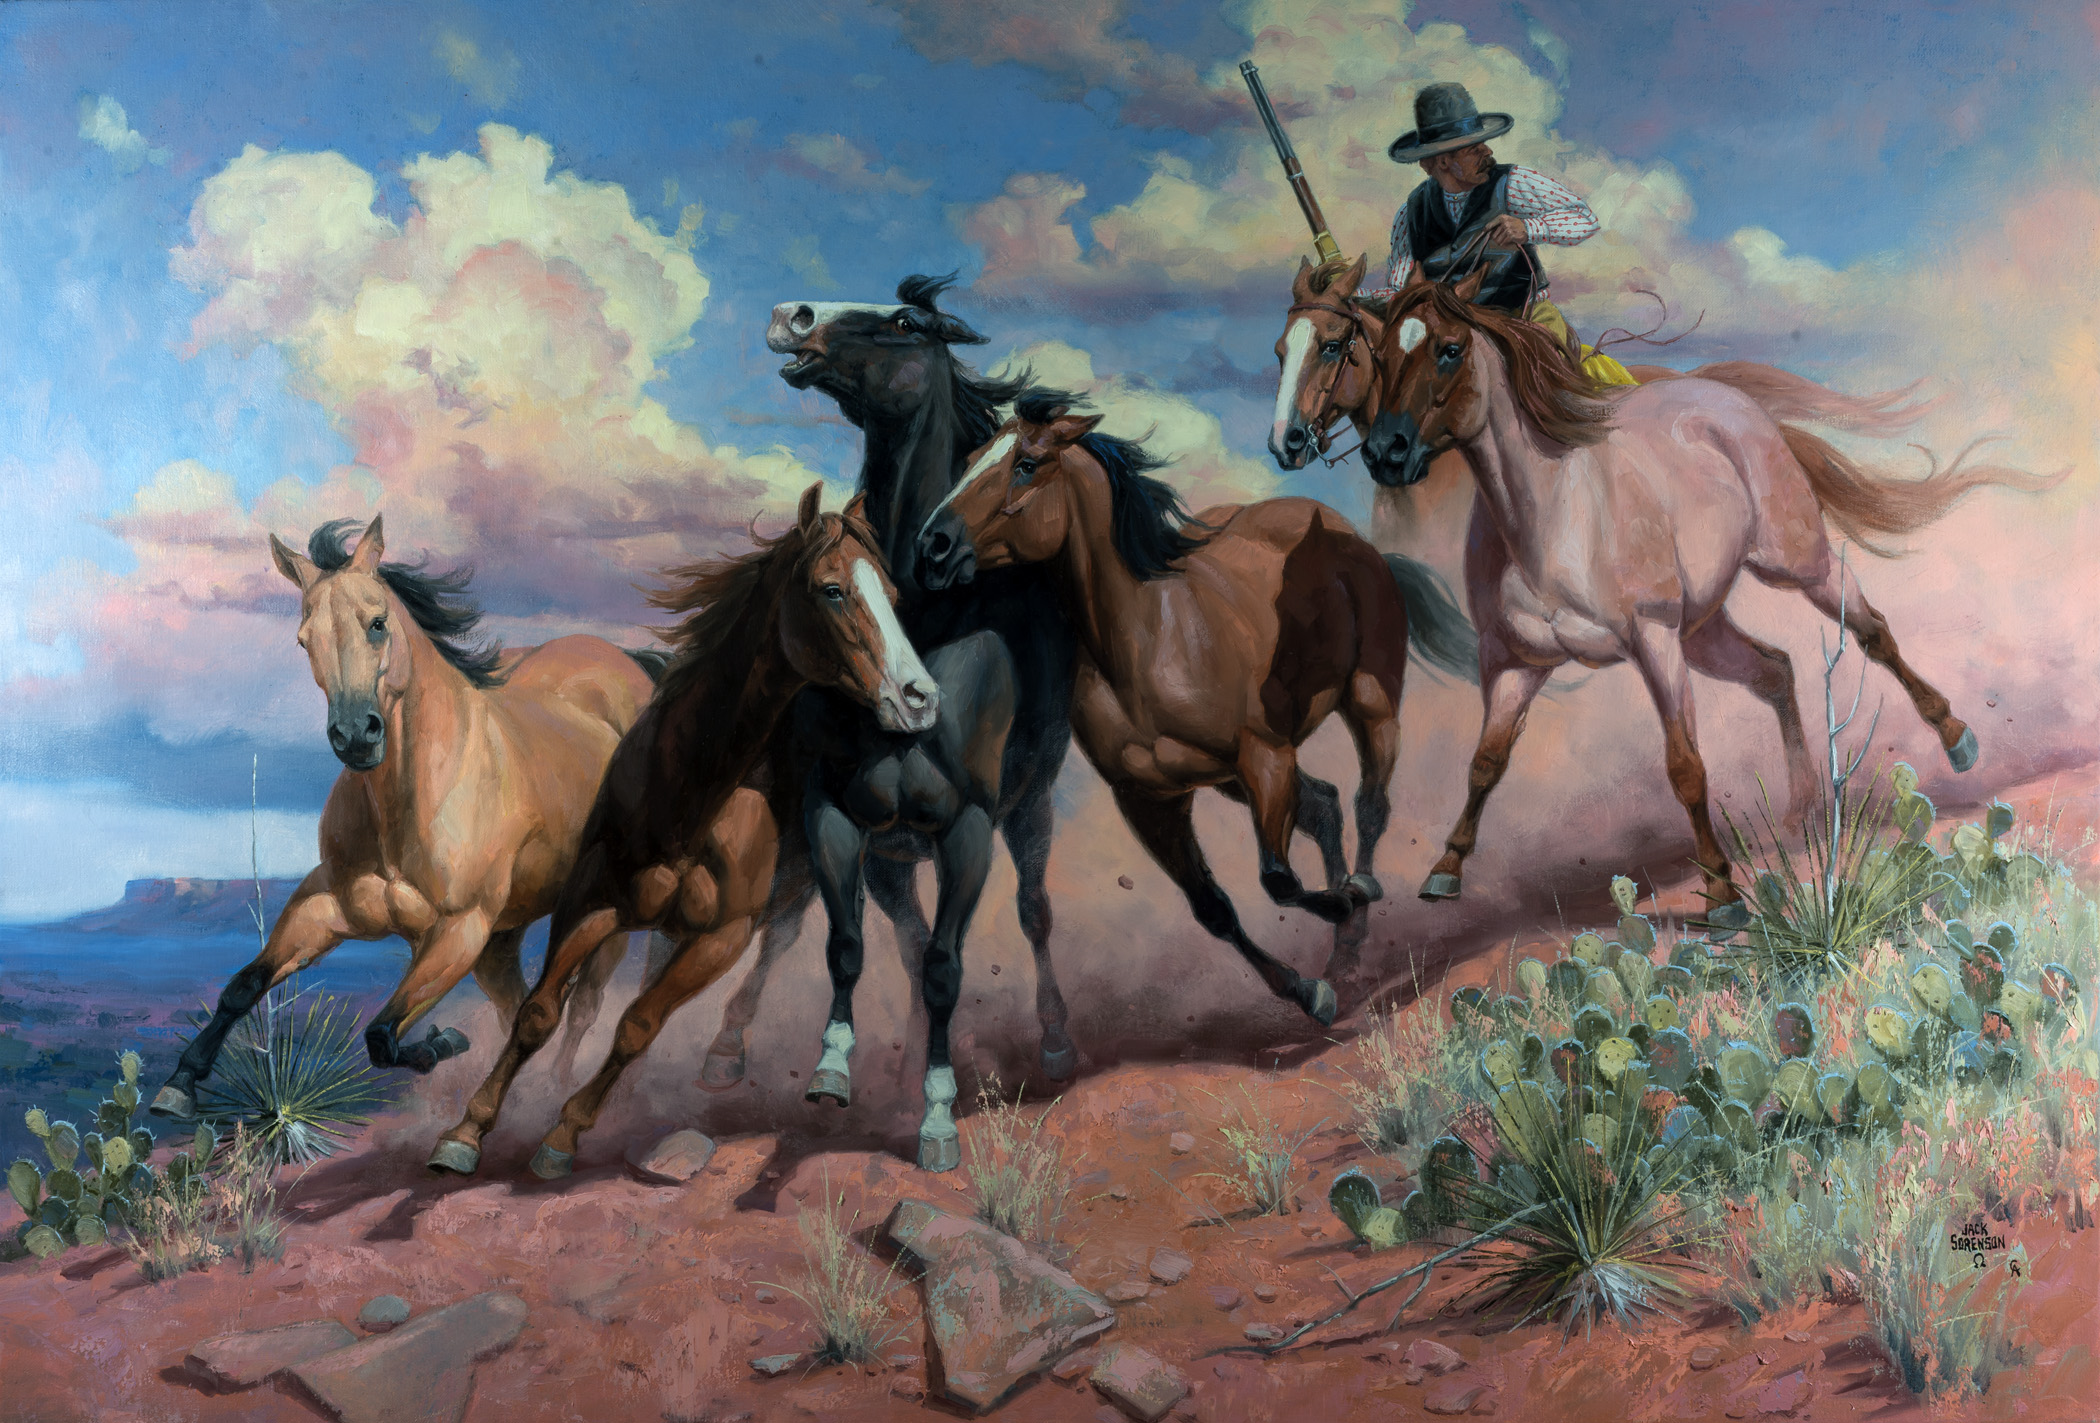 Tác phẩm “Five Stolen Horses”(Năm Chú Ngựa Bị Đánh Cắp) vẽ bởi họa sĩ Jack Sorenson. (Ảnh: Đăng dưới sự cho phép của ©Jack Sorenson Fine Art, Inc.)